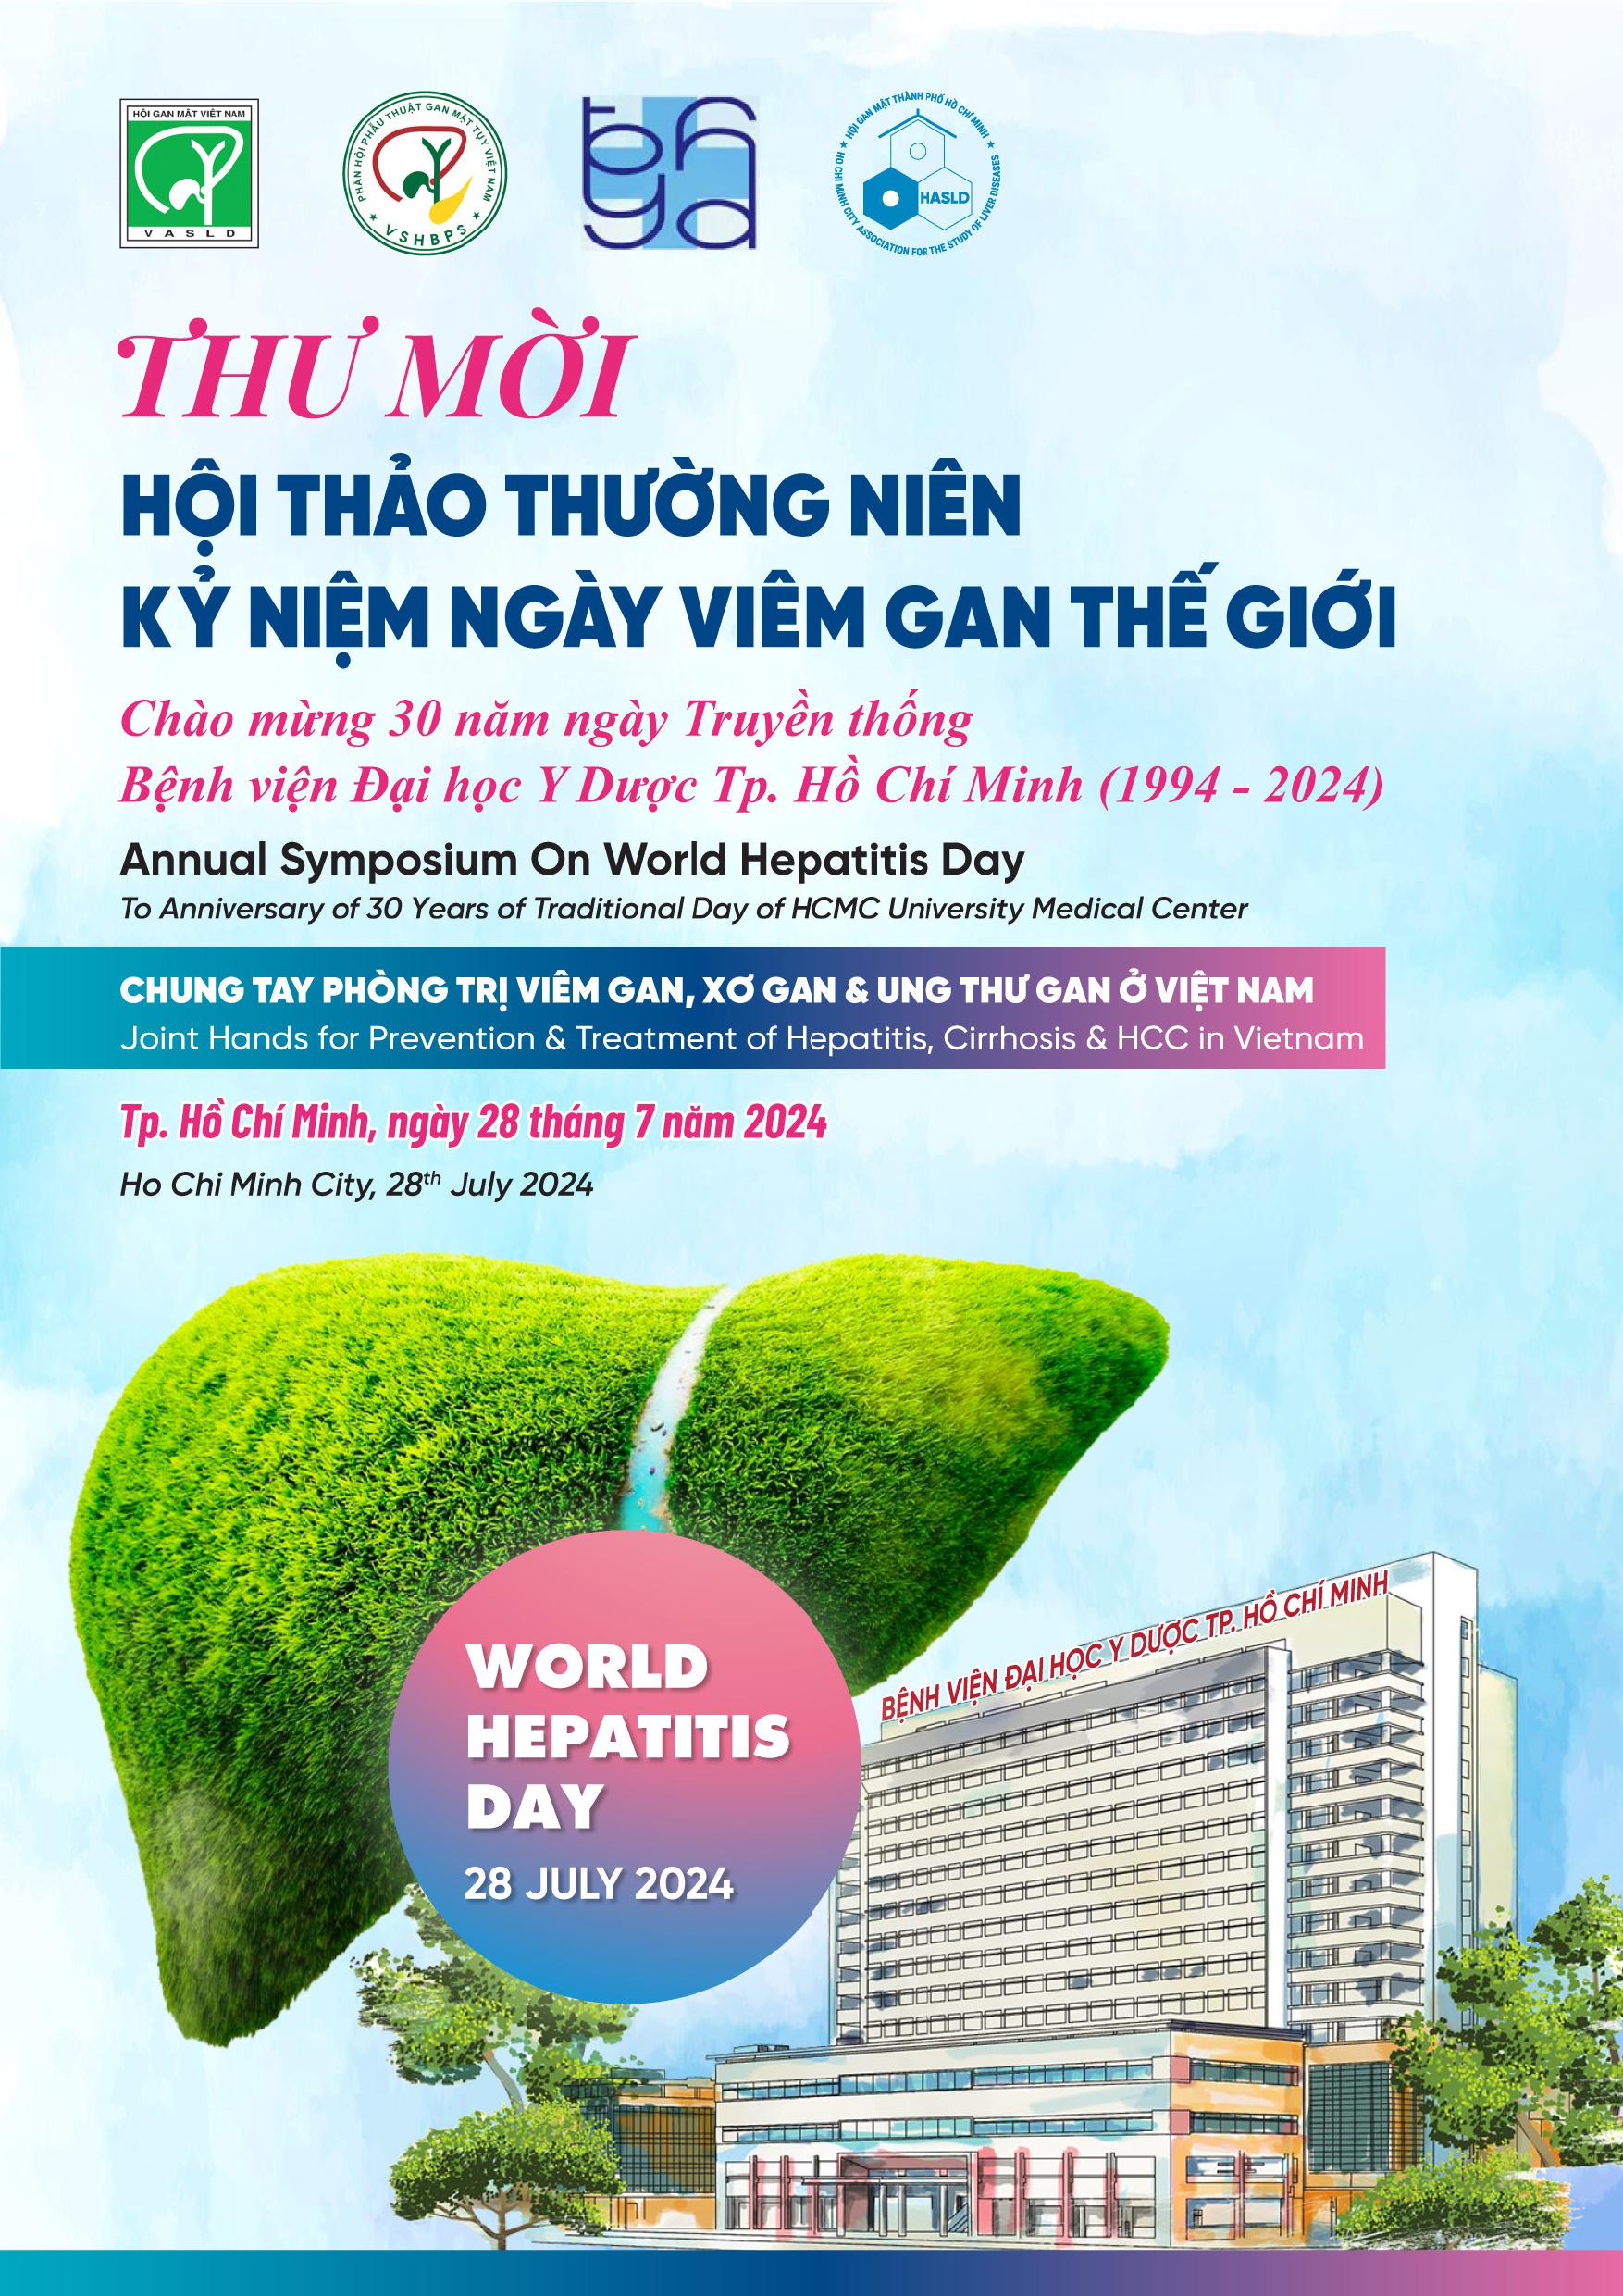 Thư mời Hội thảo thường niên kỷ niệm ngày viêm gan thế giới : Chào mừng 30 năm ngày Truyền thống Bệnh viện Đại học Y Dược Tp.Hồ Chí Minh (1994-2024)